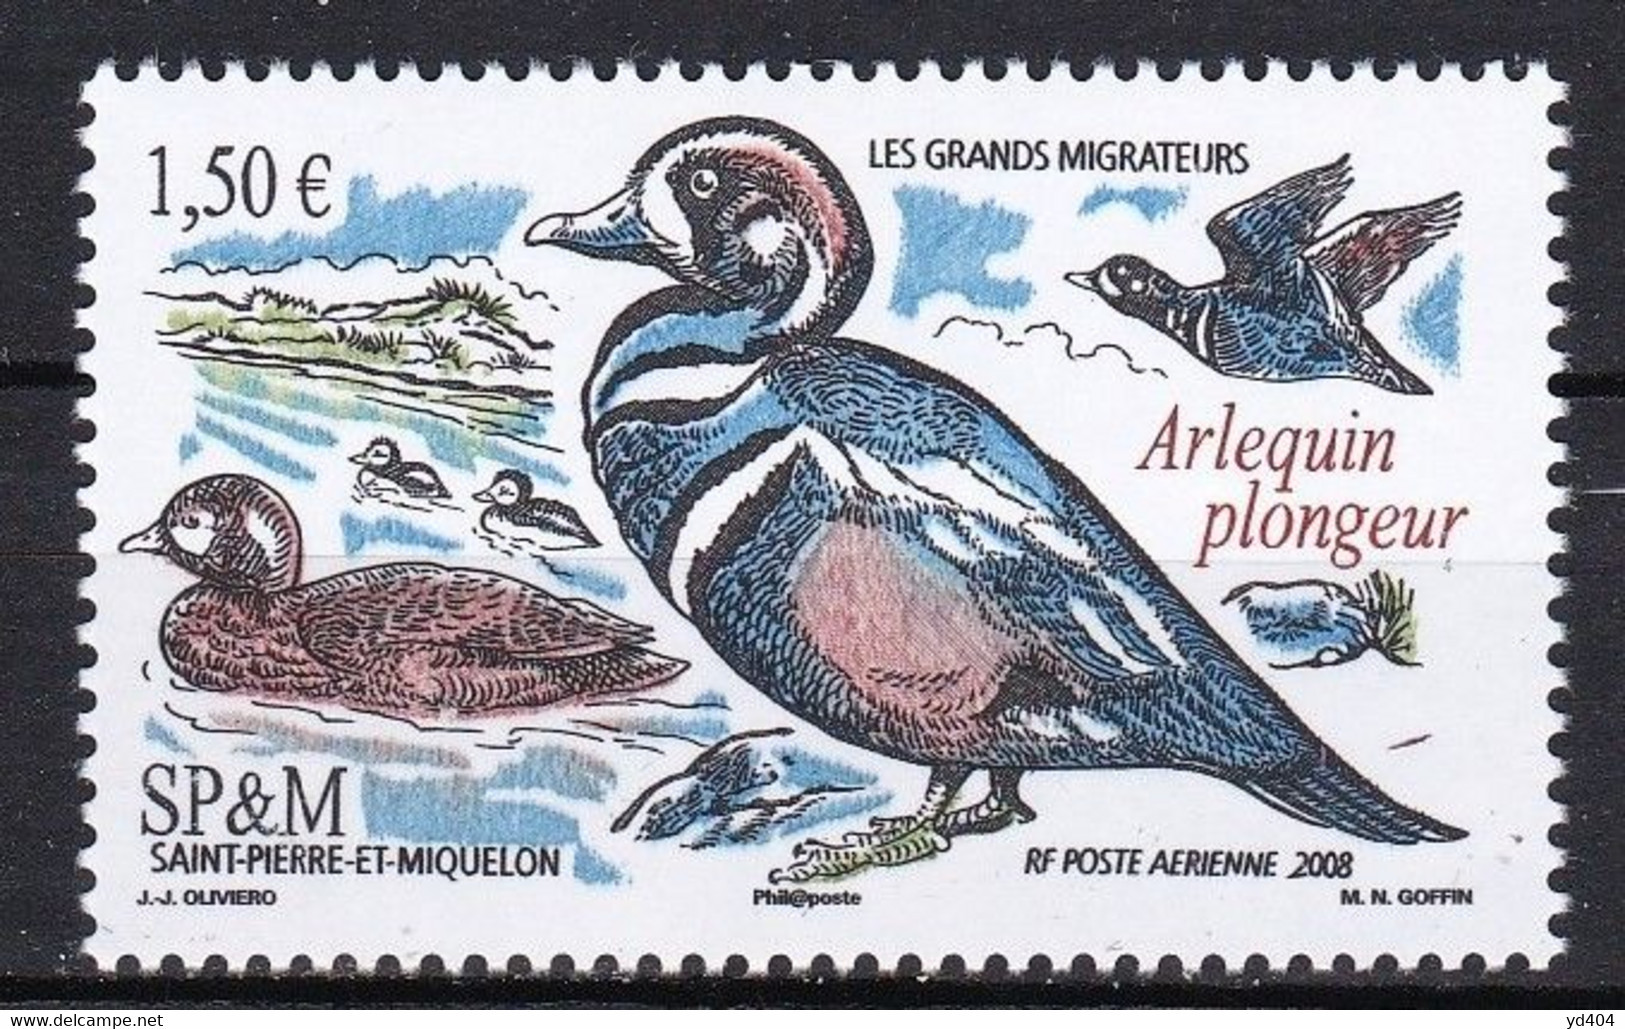 PM-430 – ST PIERRE & MIQUELON – AIRMAIL - 2008 – MIGRATORY BIRDS – SG # 1082 MNH 7 € - Neufs